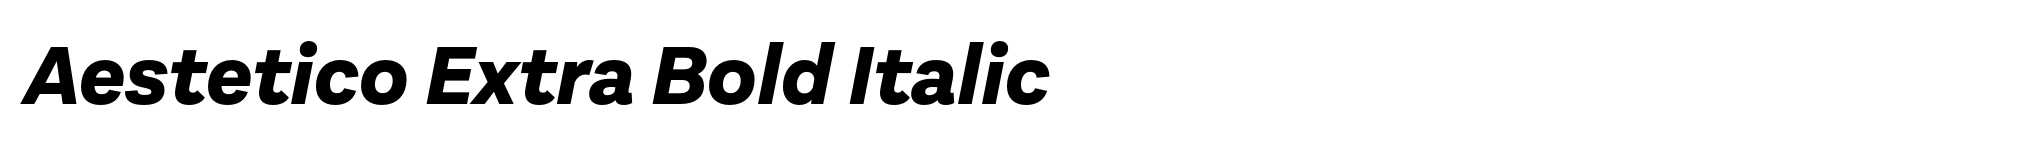 Aestetico Extra Bold Italic image